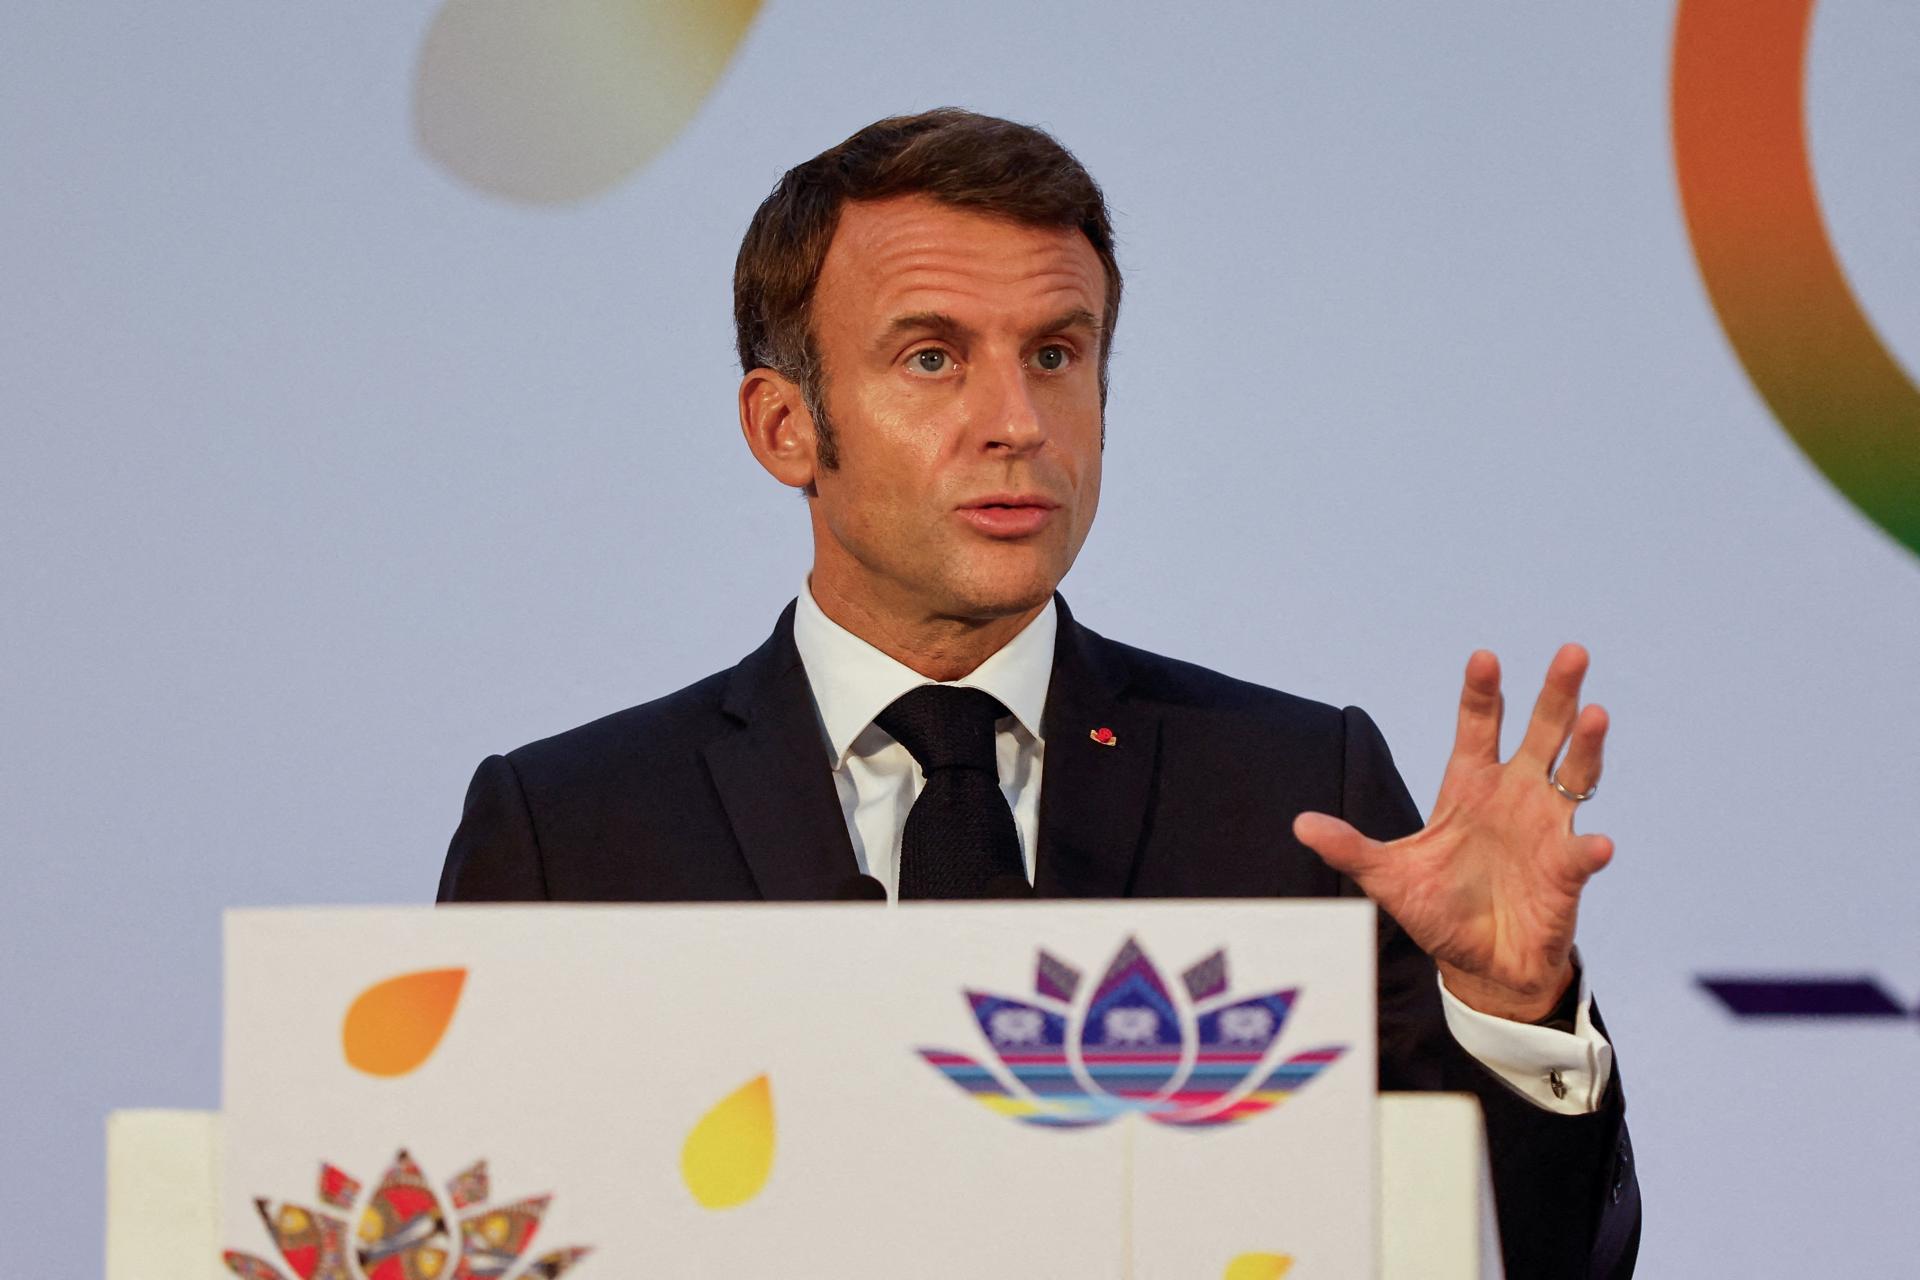 L’ambassadeur de France au Niger est retenu en otage à l’ambassade, a déclaré Macron